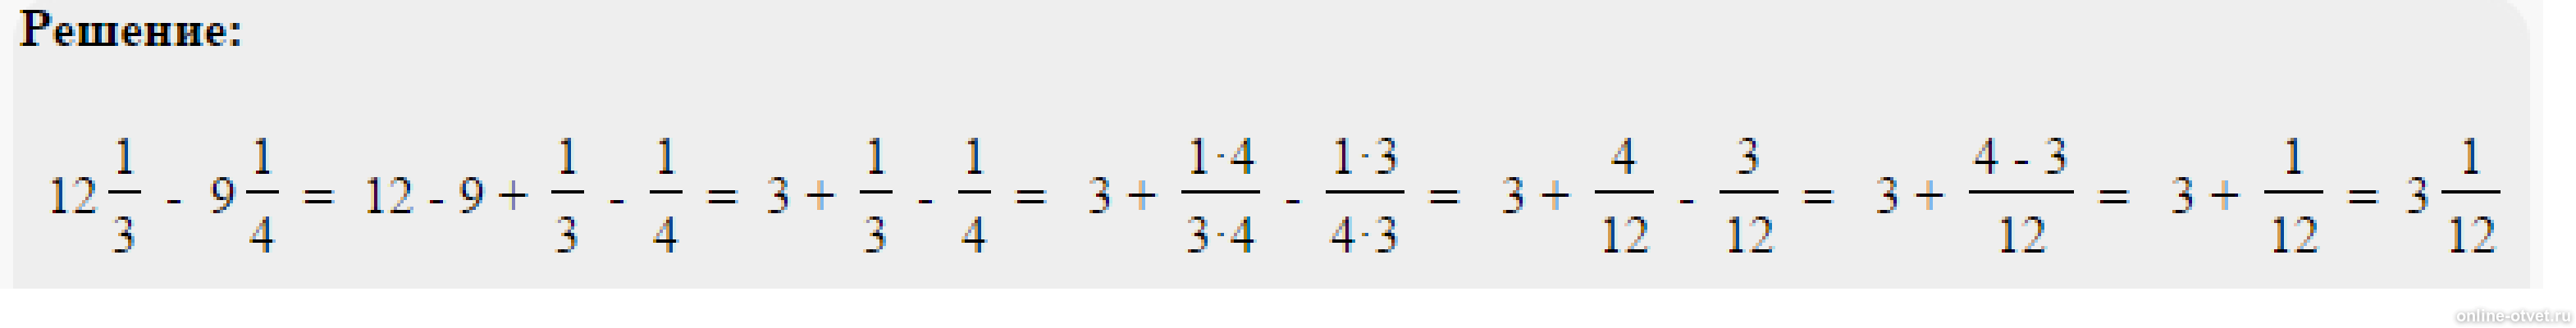 Четыре минус одна третья. Решить пример одна целая одна пятая. Пример 4 целых3/8*2 целых 3/5*8/9. Решить пример 2 целых минус 1 целая 3/5. Минус 1 целая 3/8 минус 2 целых 5/12.